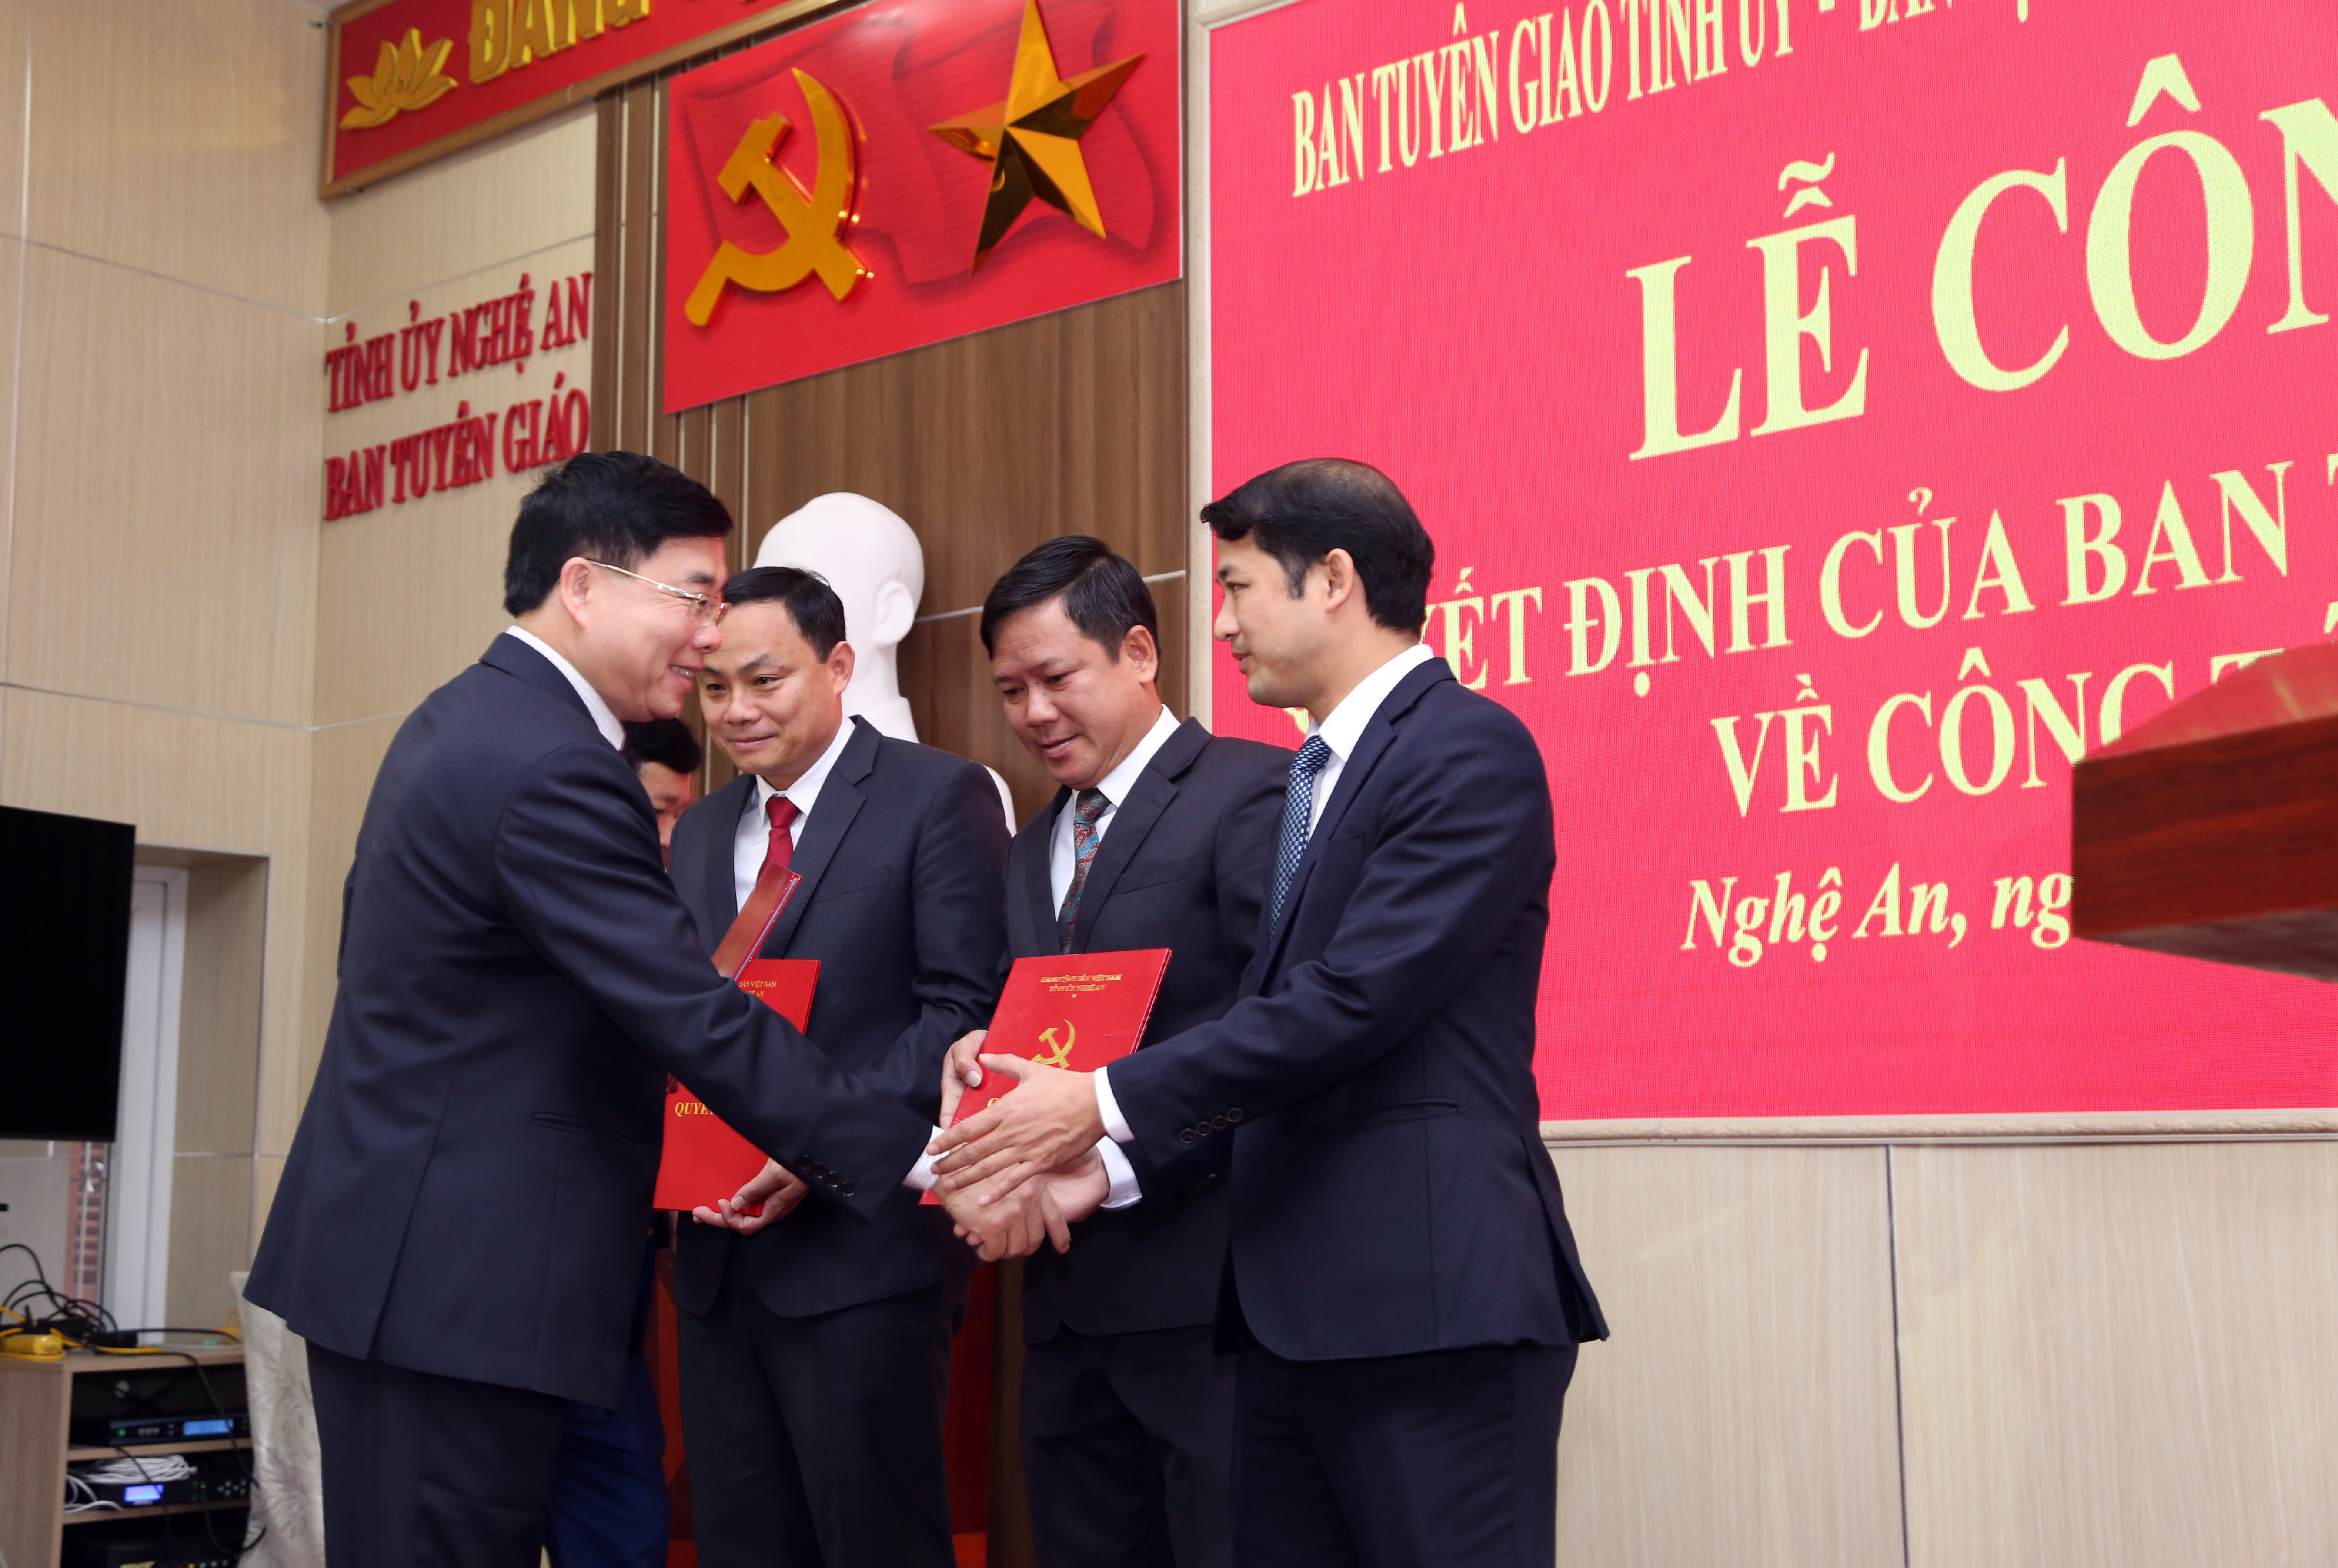 Đồng chí Nguyễn Văn Thông trao quyết định cho các đồng chí được bổ nhiệm, phân công nhiệm vụ mới. Ảnh Đào Tuấn